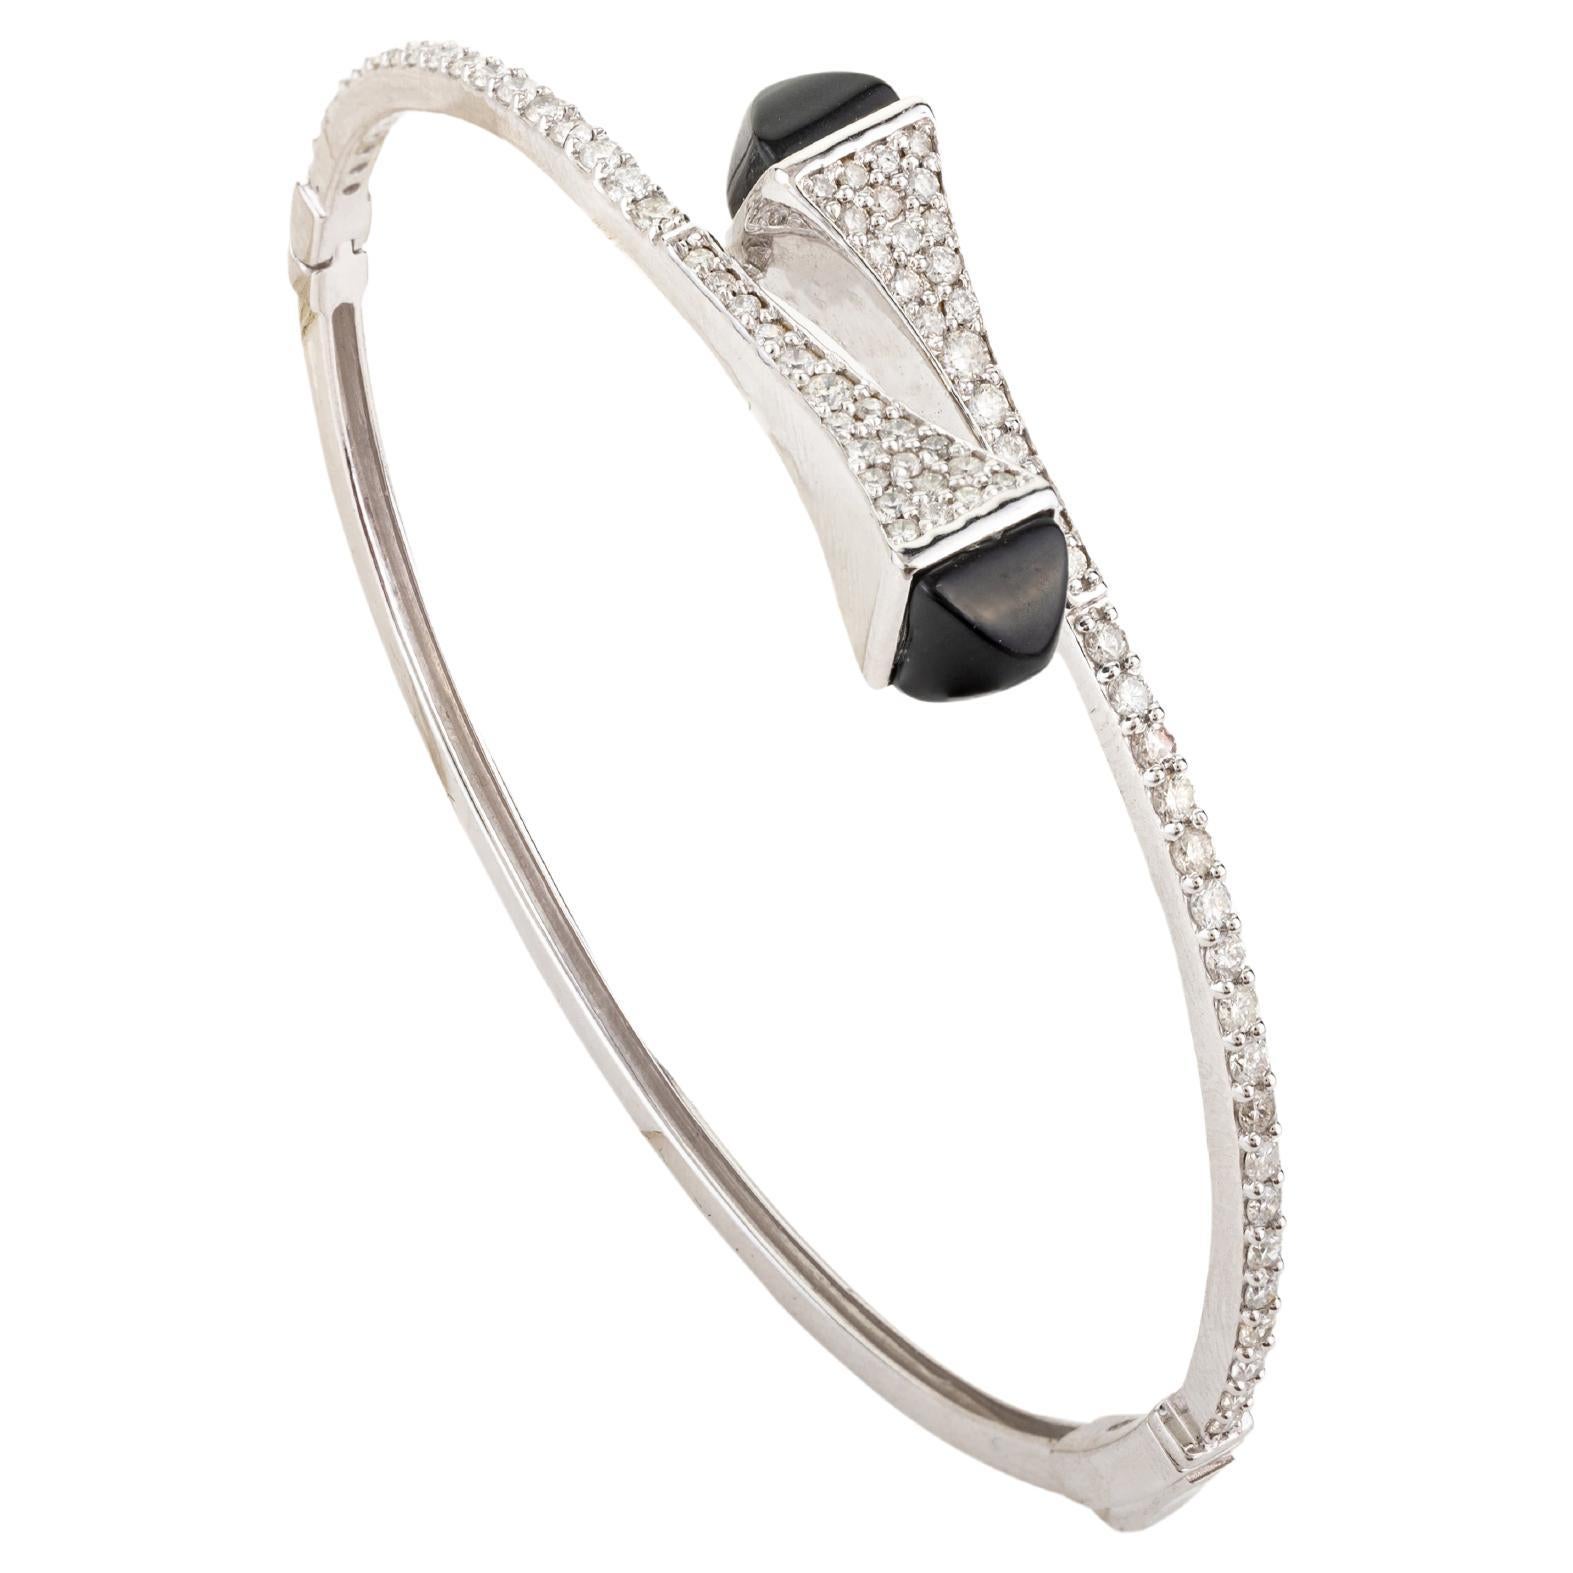 18k White Gold 1.19 CTW Certified Diamond Bangle Bracelet Gift for Her For Sale